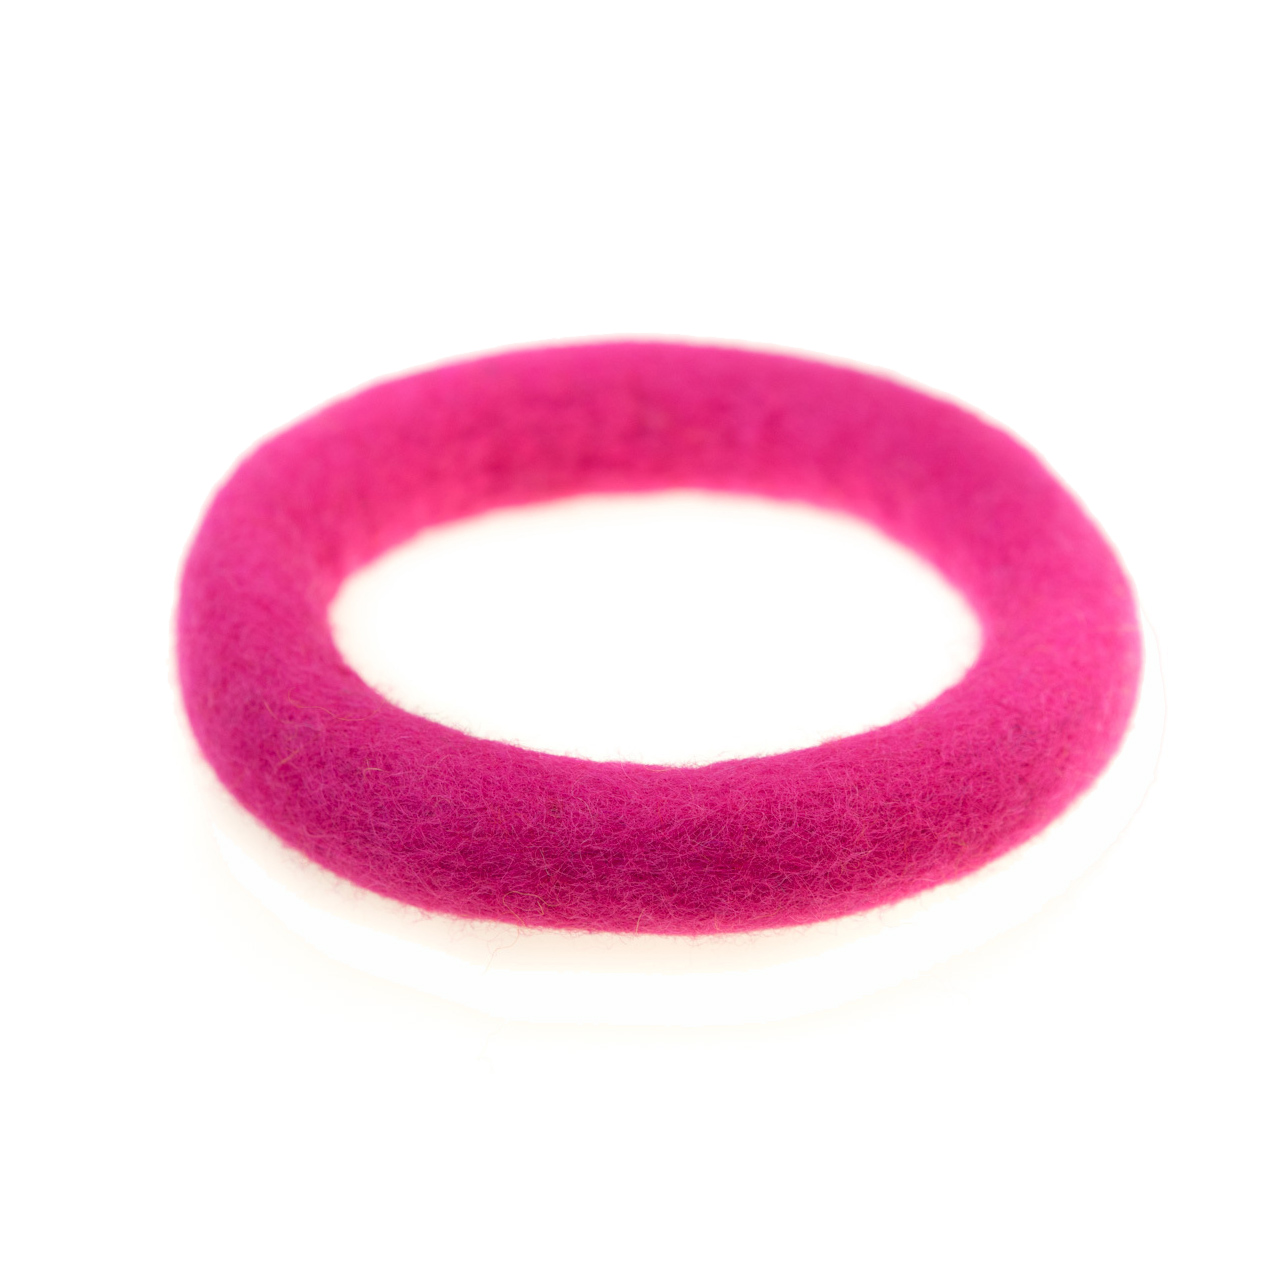 Filzring zum Aufstellen von Klangschalen pink, Durchmesser 14 cm, Seitenansicht